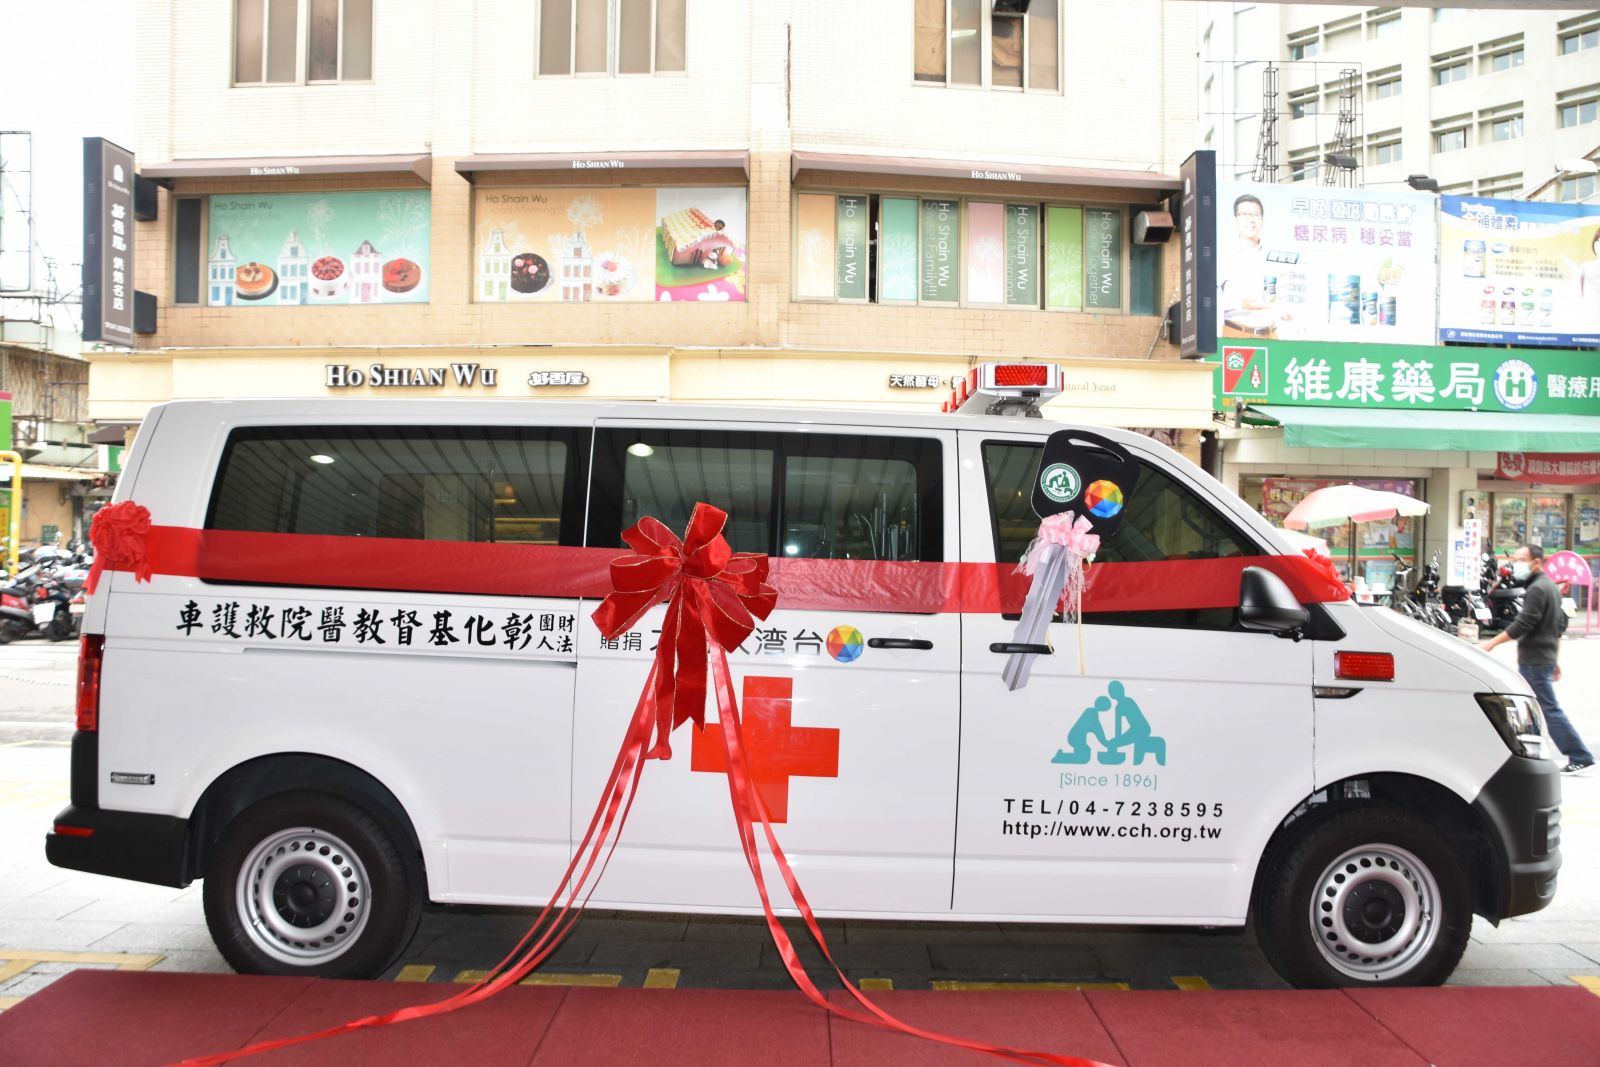 提升緊急救護品質  台灣大捐救護車贈彰基 | 文章內置圖片